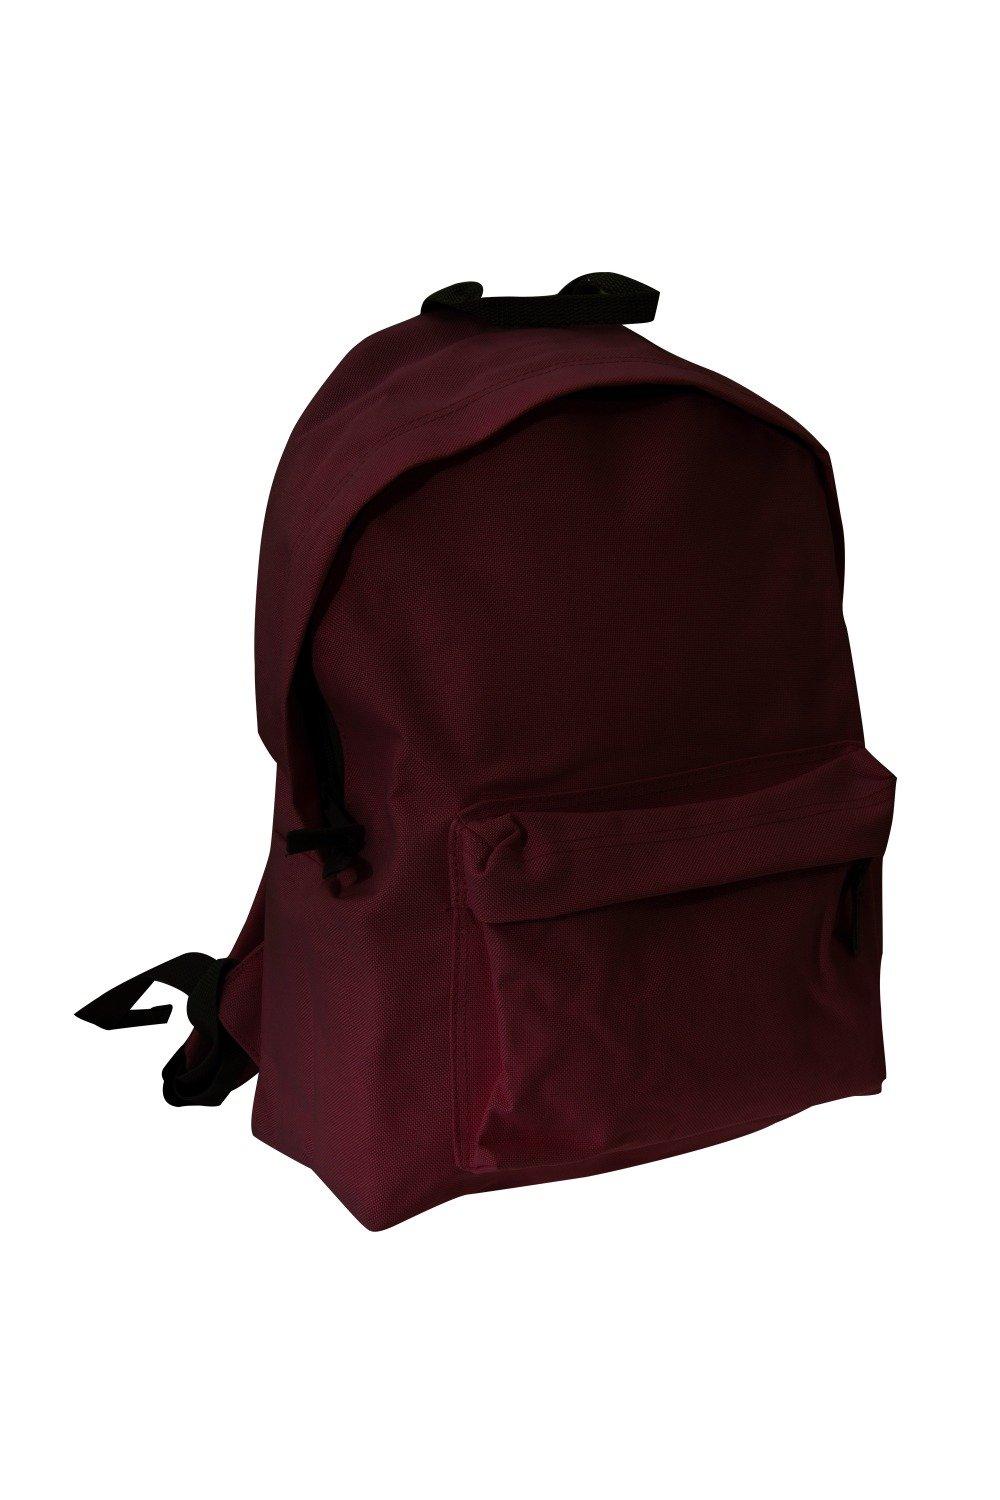 Модный рюкзак / рюкзак (14 литров) (2 шт. в упаковке) Bagbase, красный trixie купалка для хомяков и мышей дерево 22 х 12 х 12 см 63004 0 325 кг 56348 1 шт